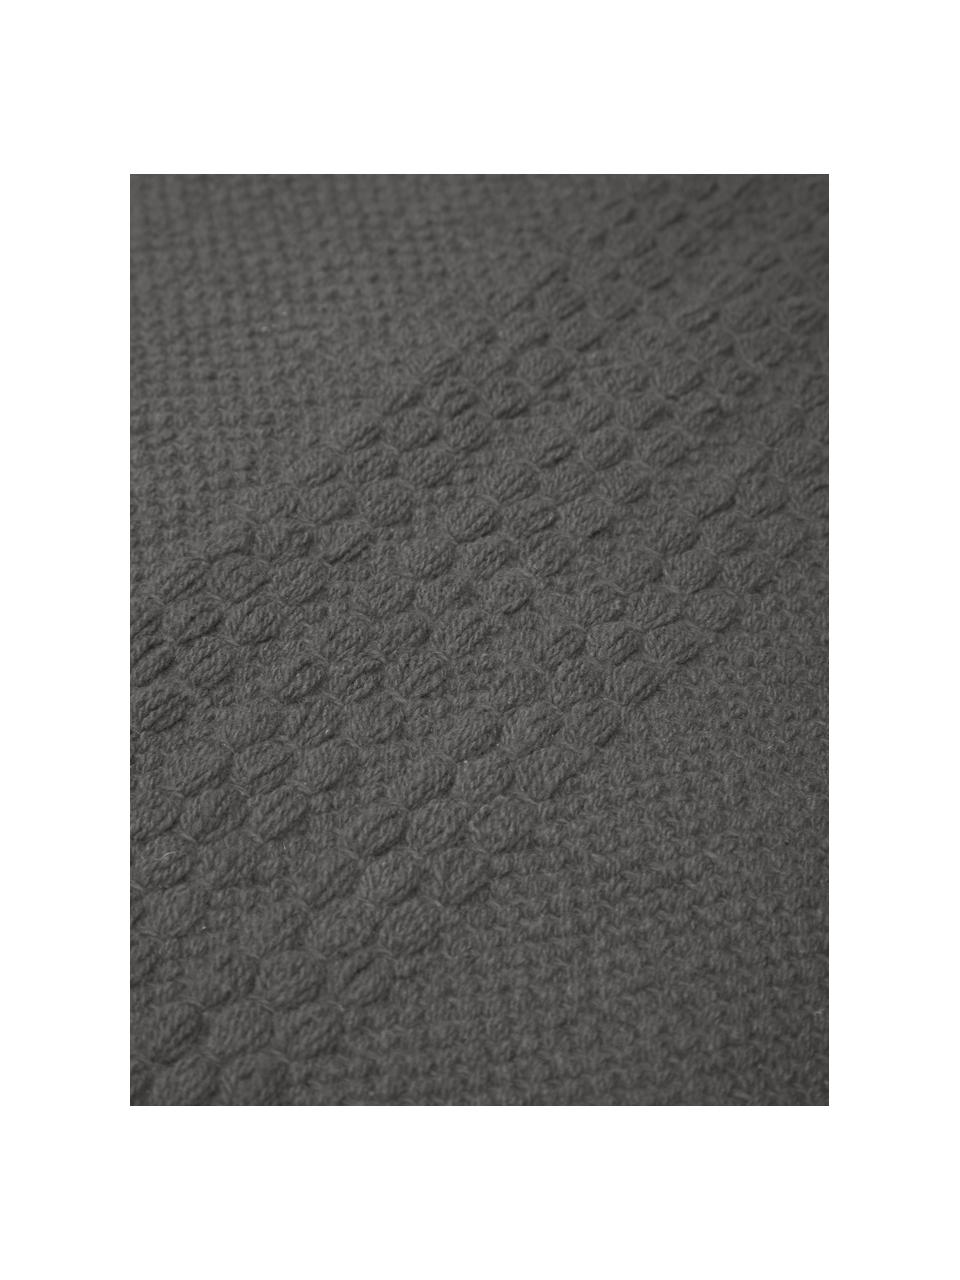 Bavlněný koberec se strukturou tkaných pruhů tón v tónu a třásněmi Tanya, Tmavě šedá